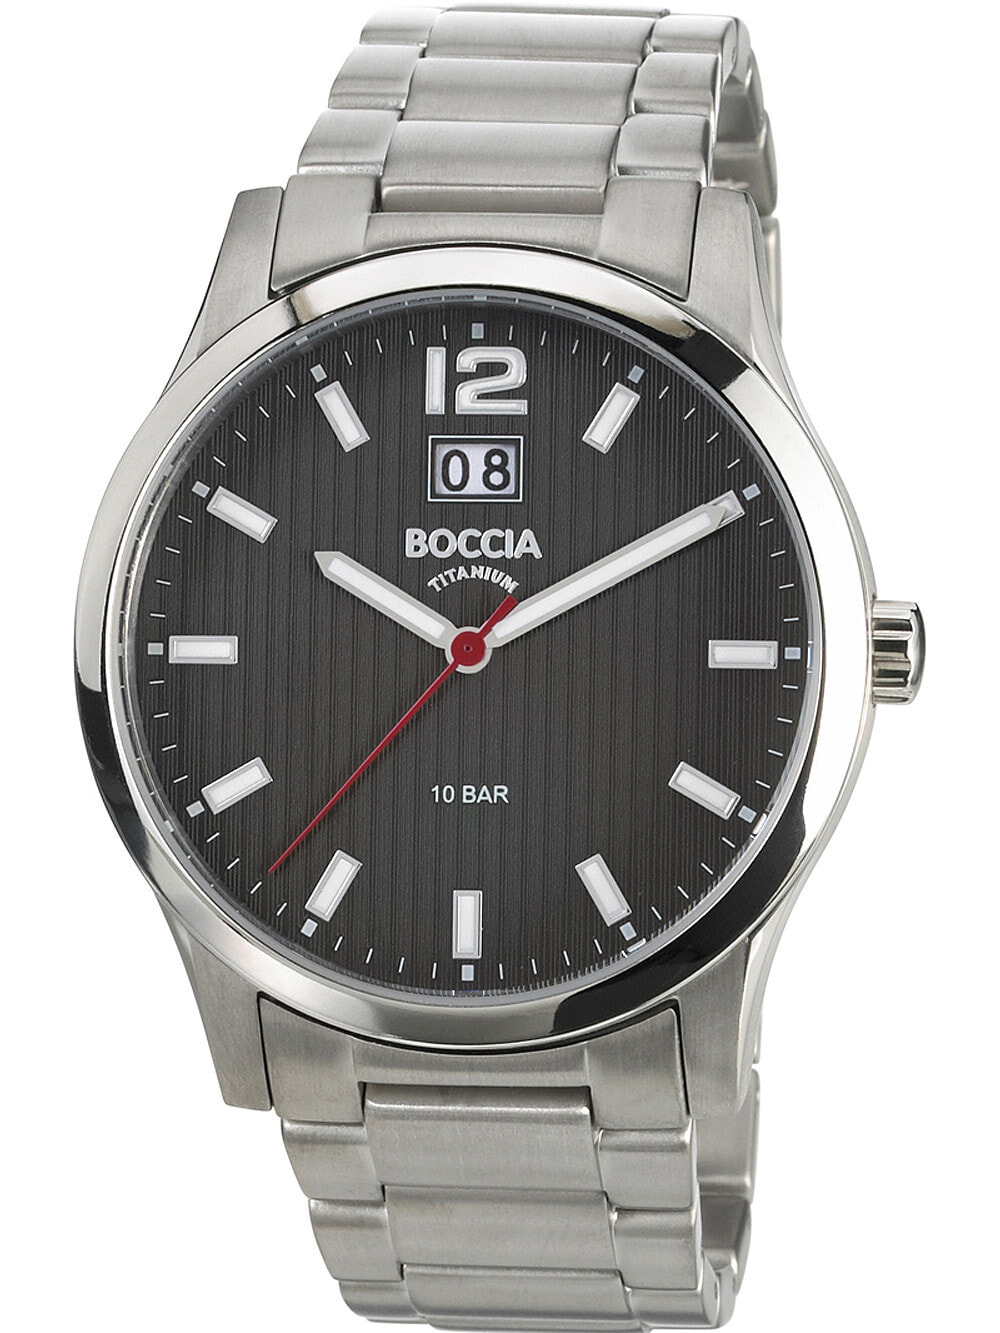 Мужские наручные часы с серебряным браслетом Boccia 3580-02 mens watch titanium 42mm 10ATM